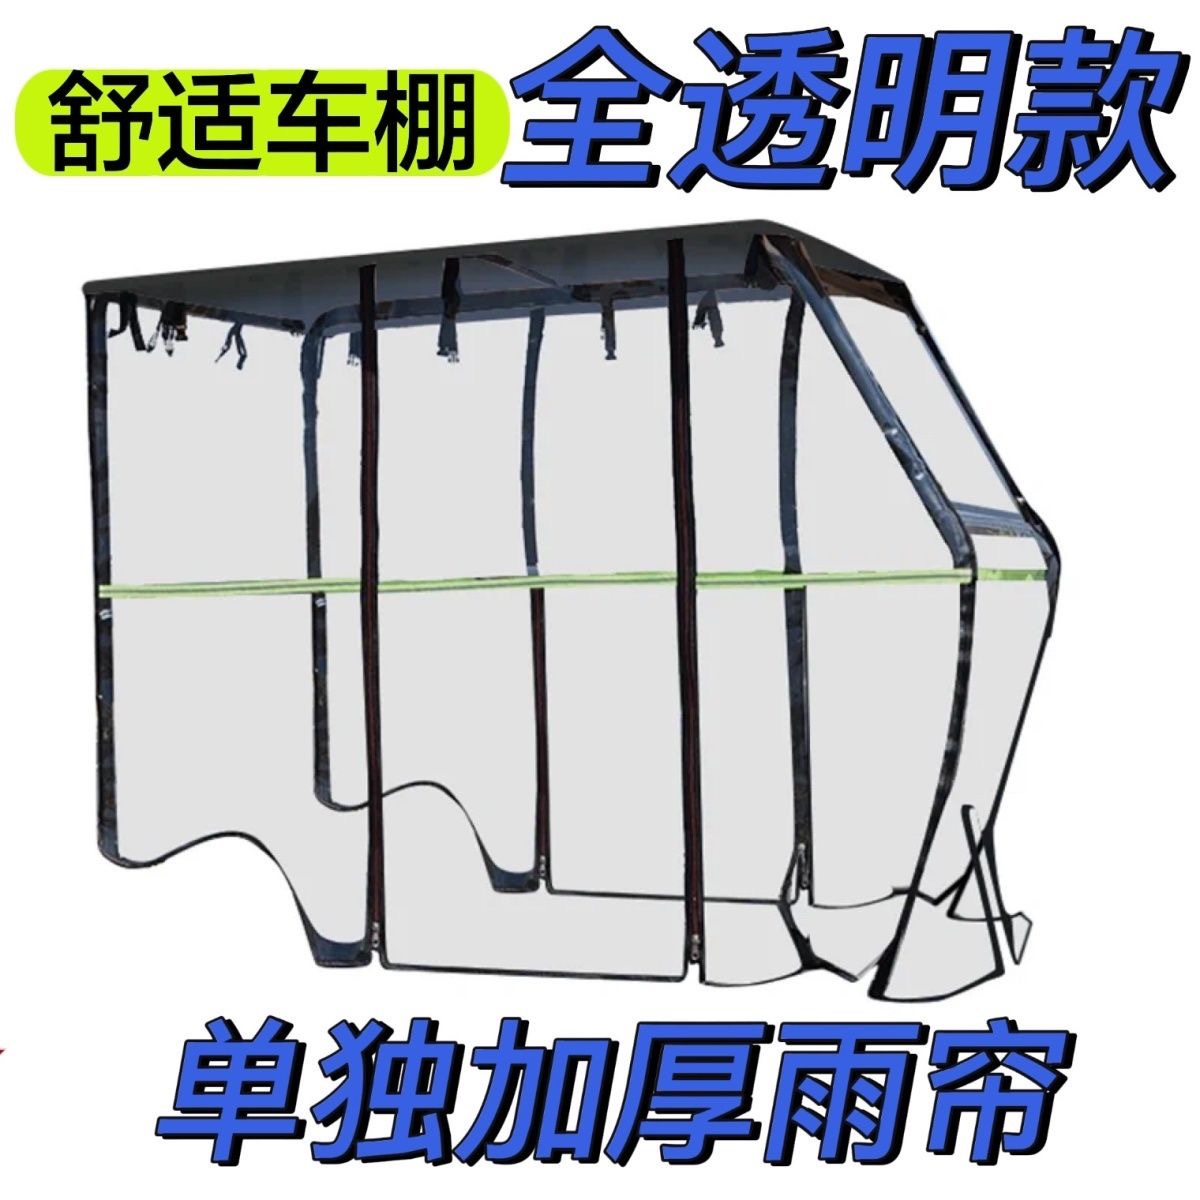 电动三轮车车棚篷休闲小巴士三轮车透明加厚遮雨棚篷车棚雨帘围帘